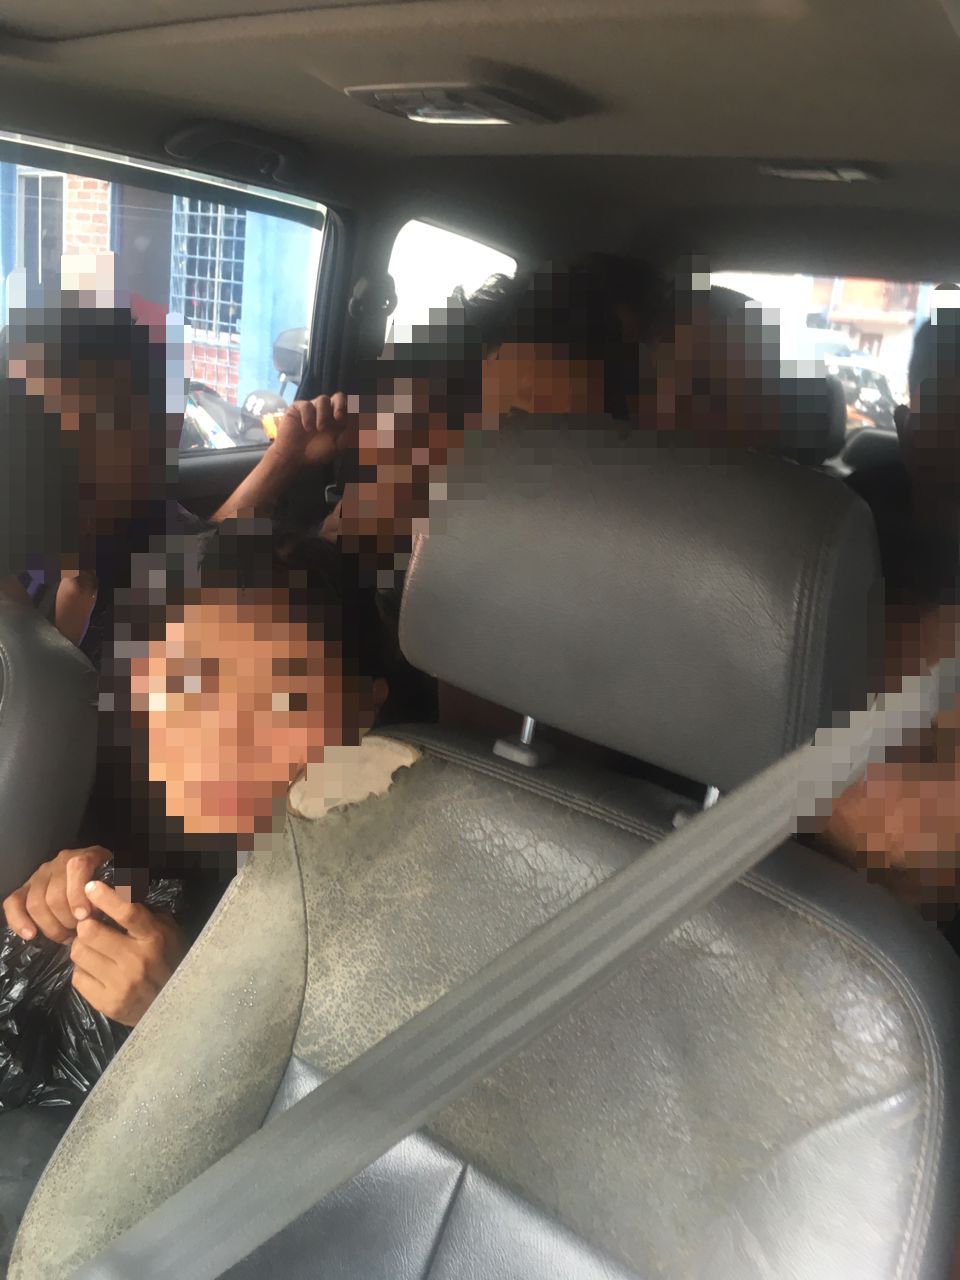 SS2闹市捕2人口贩卖分子 警证实车内还有9非法移民